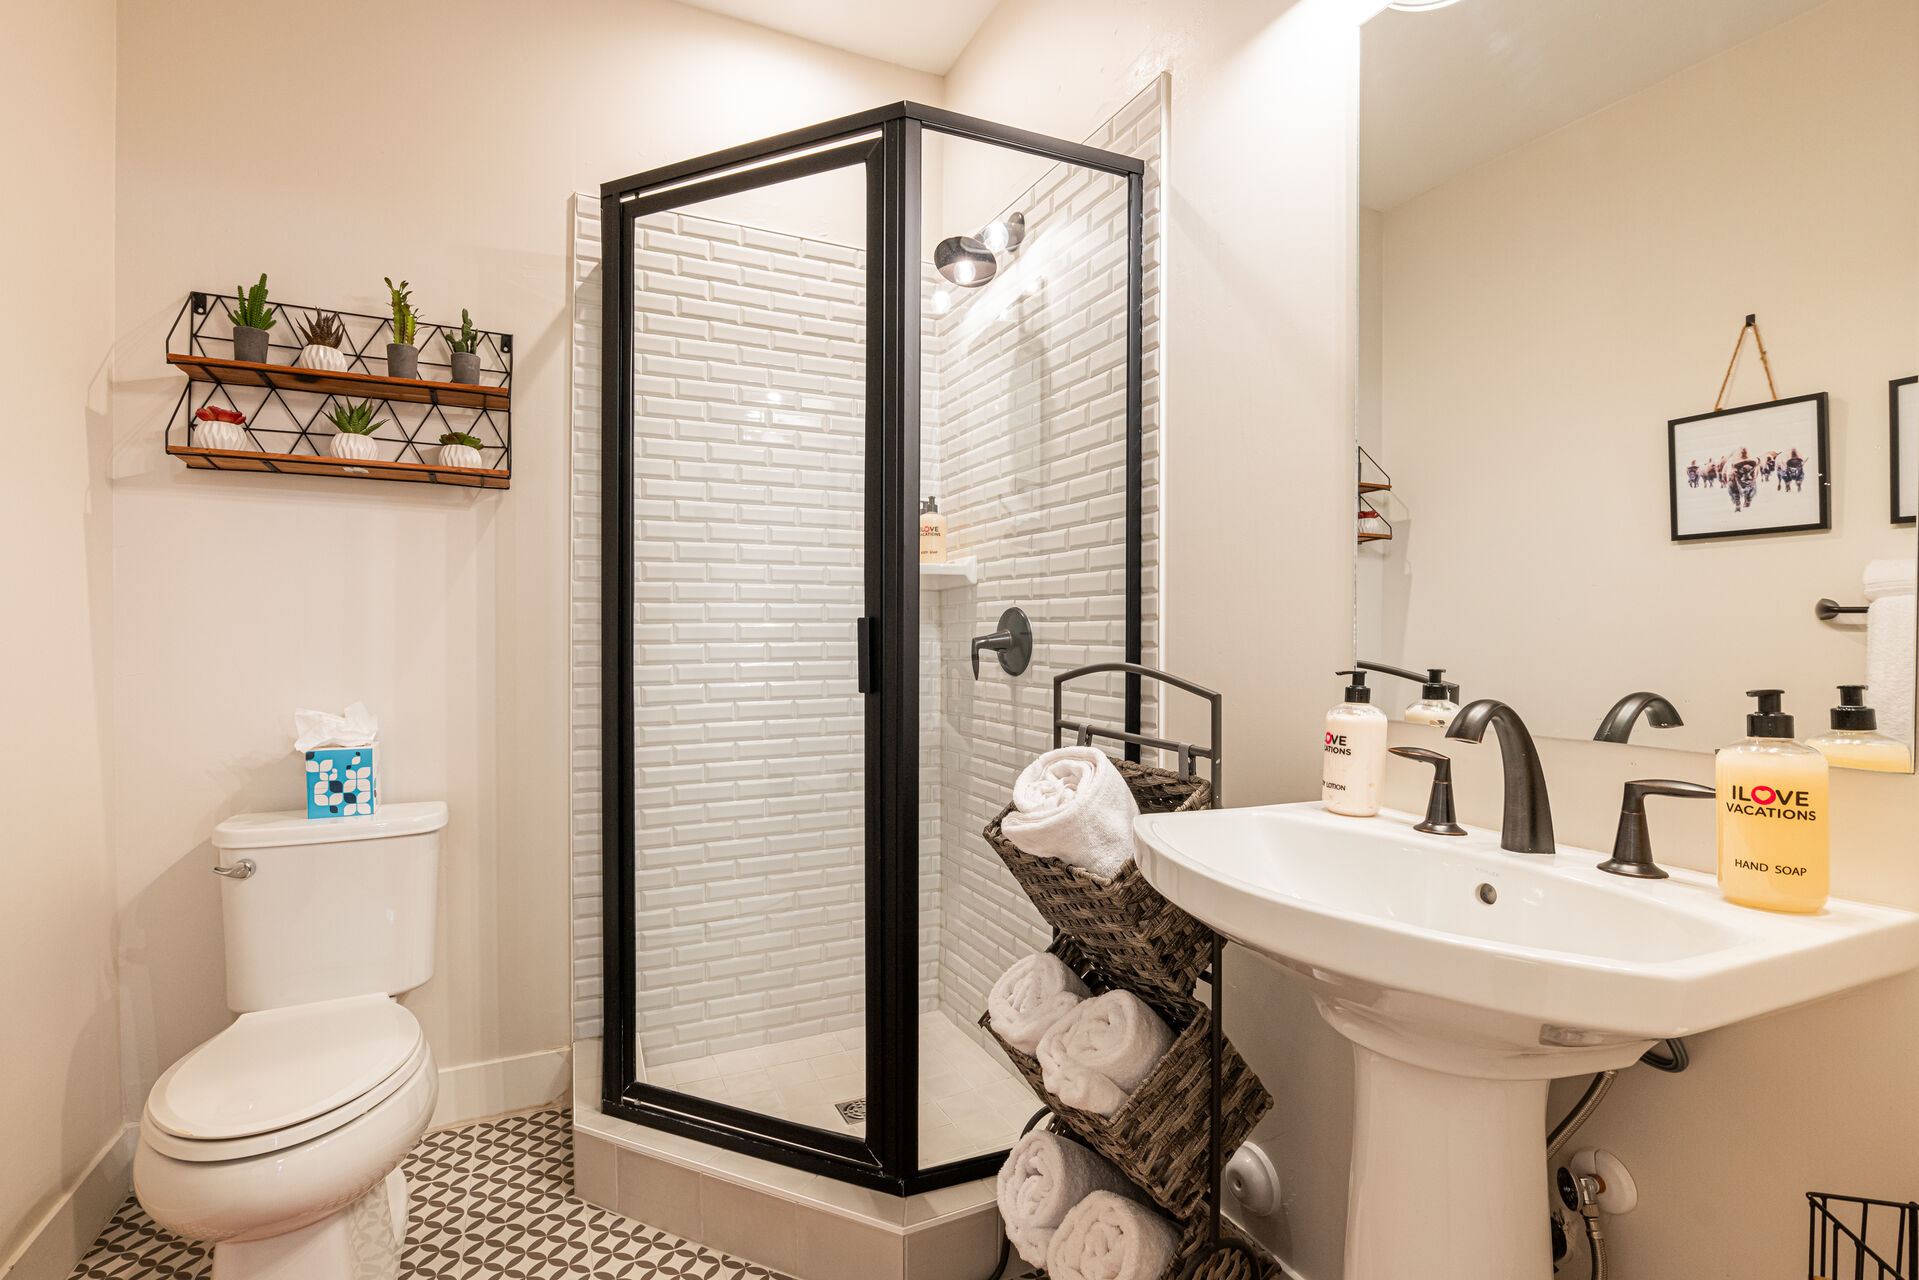 Bedroom 4 En suite bathroom with beautiful tiled glass shower